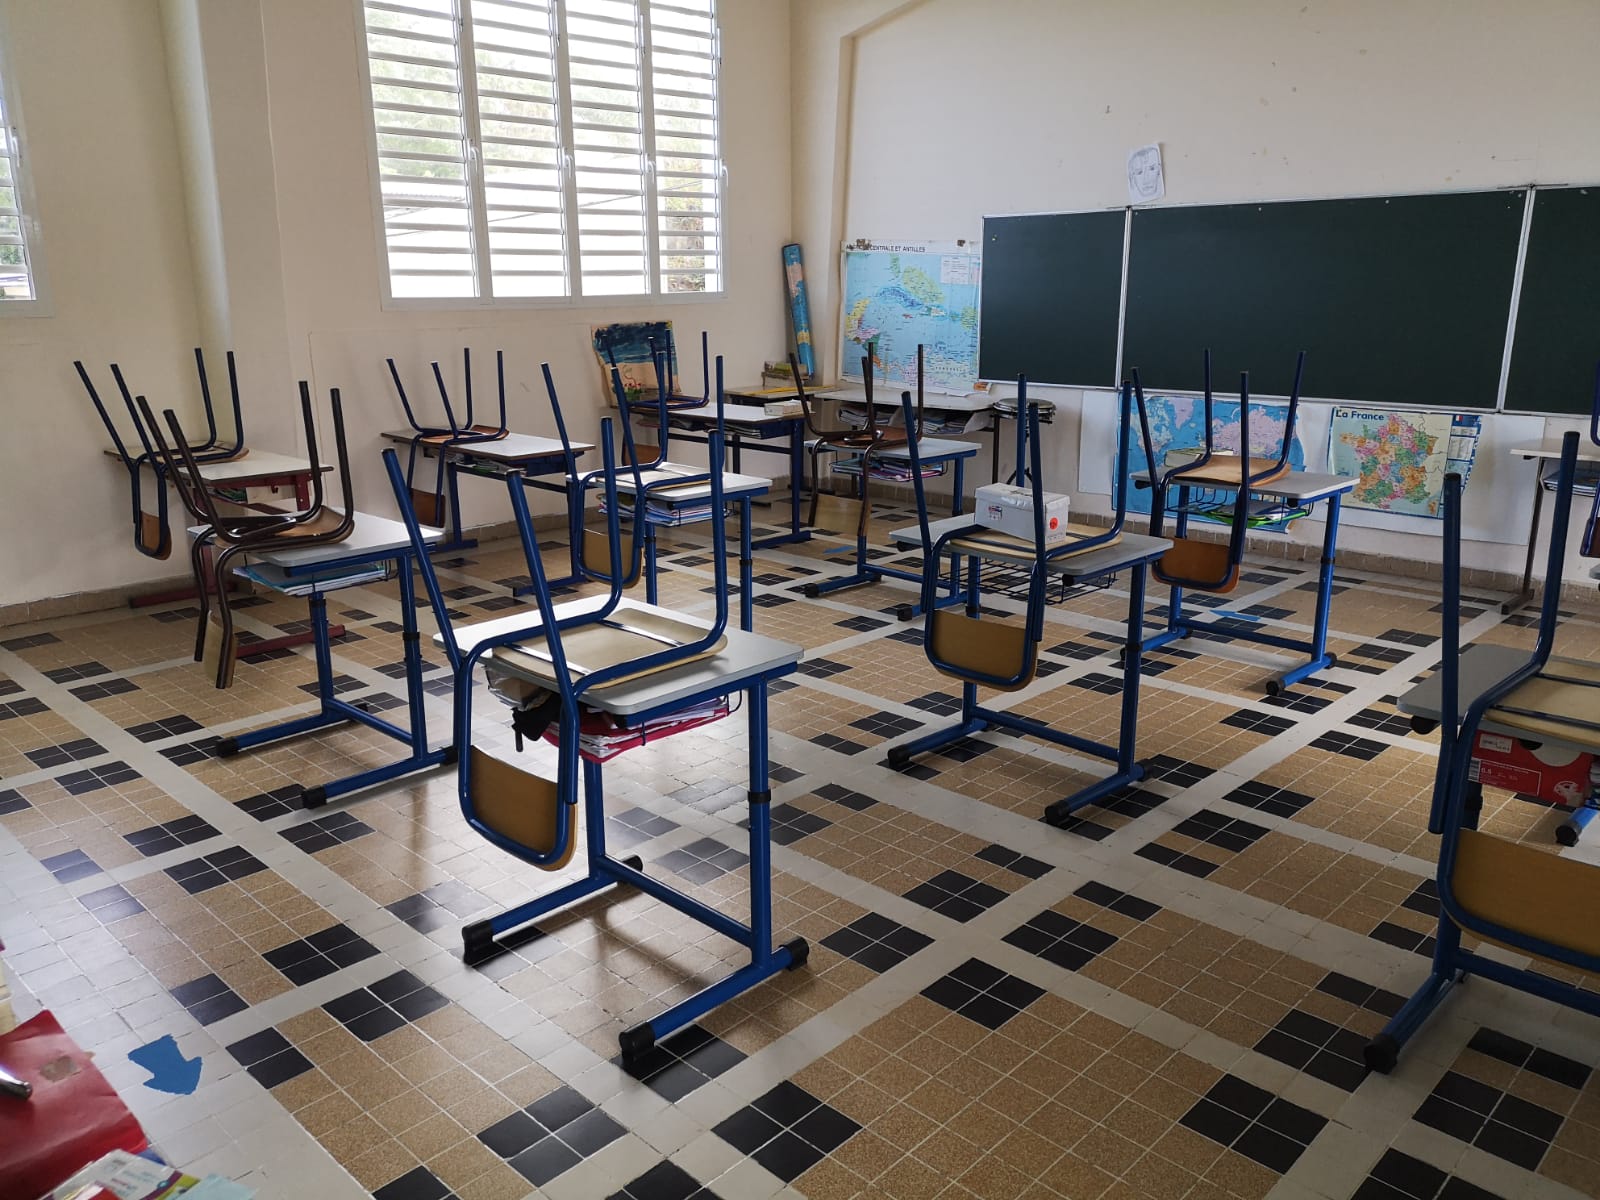     A Porto Rico, la question des écoles fermées divise 

